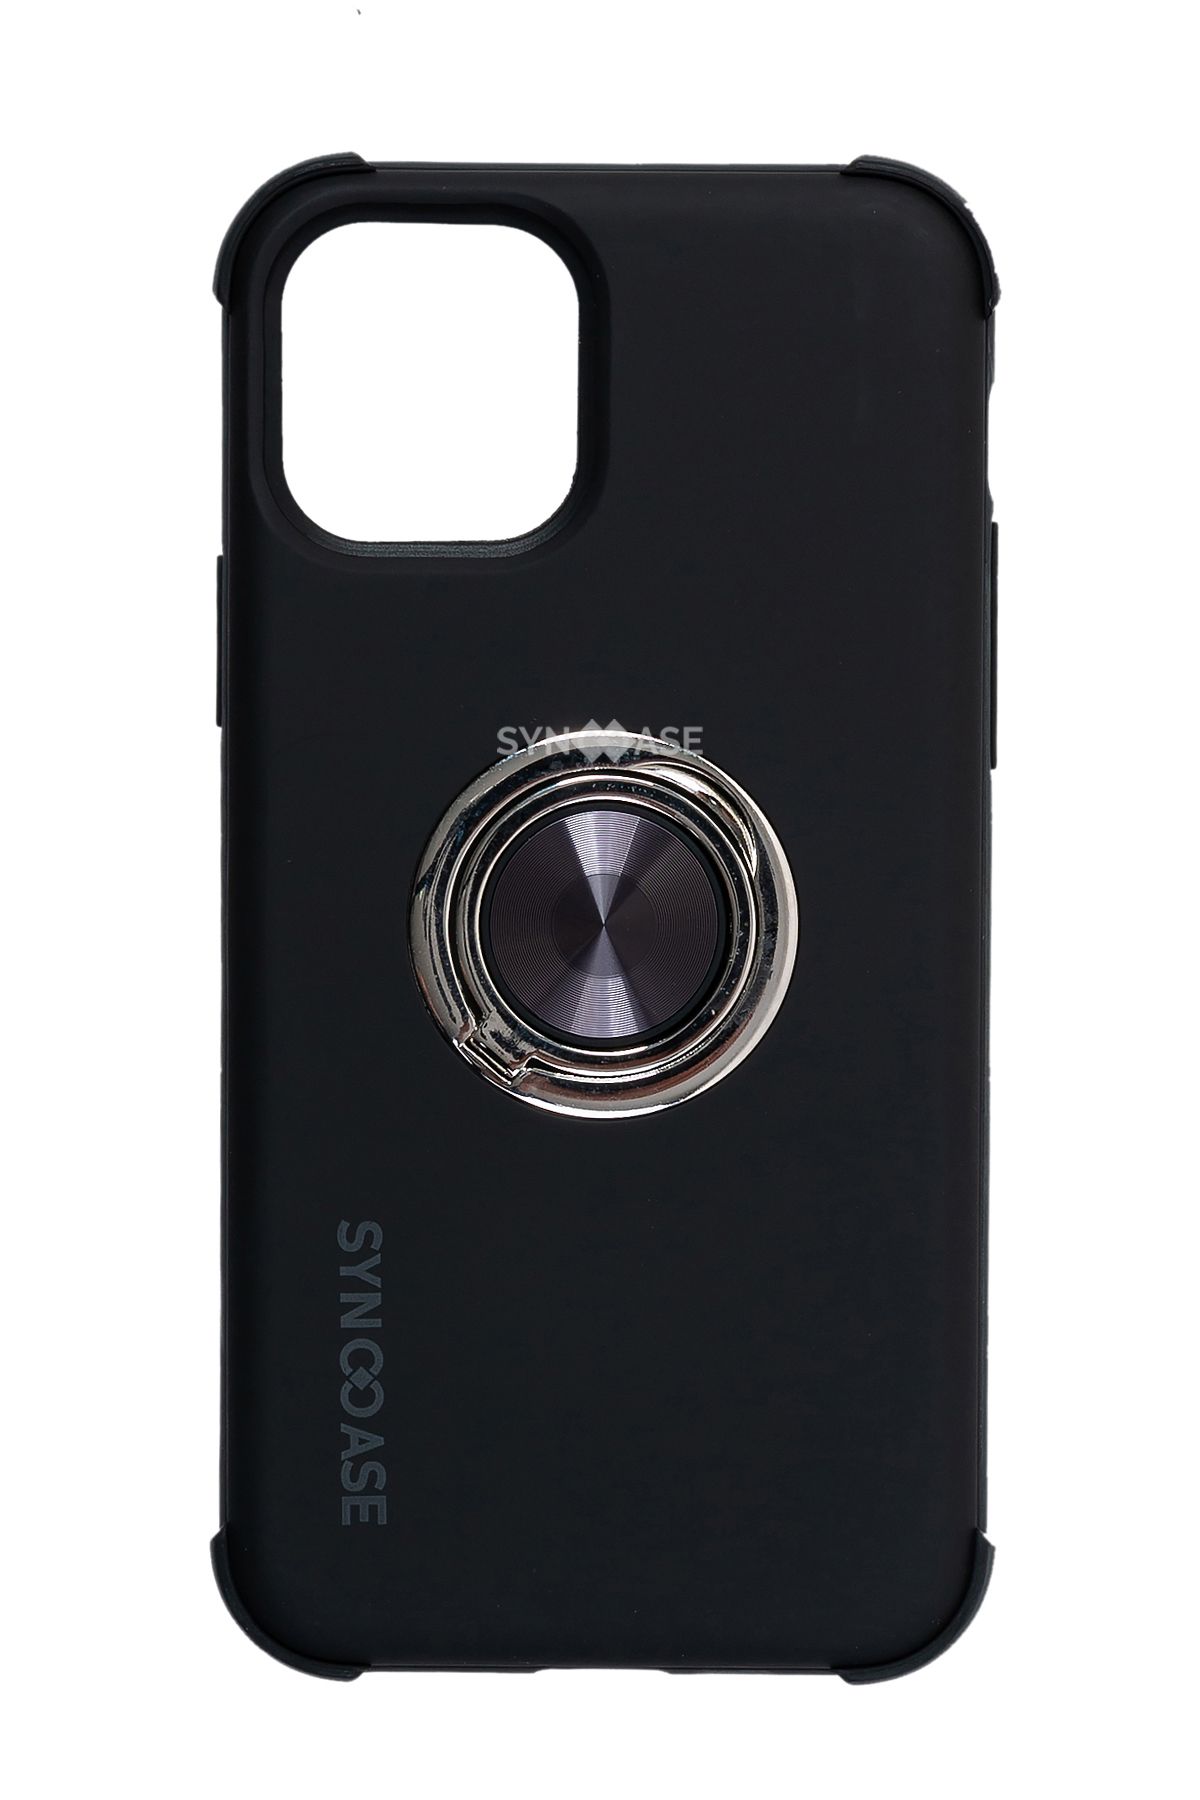 SyncCase Iphone 11 Pro Max Kılıf Ile Uyumlu Telefon Kılıfı Darbeye Dayanıklı Telefon Kabı Siyah